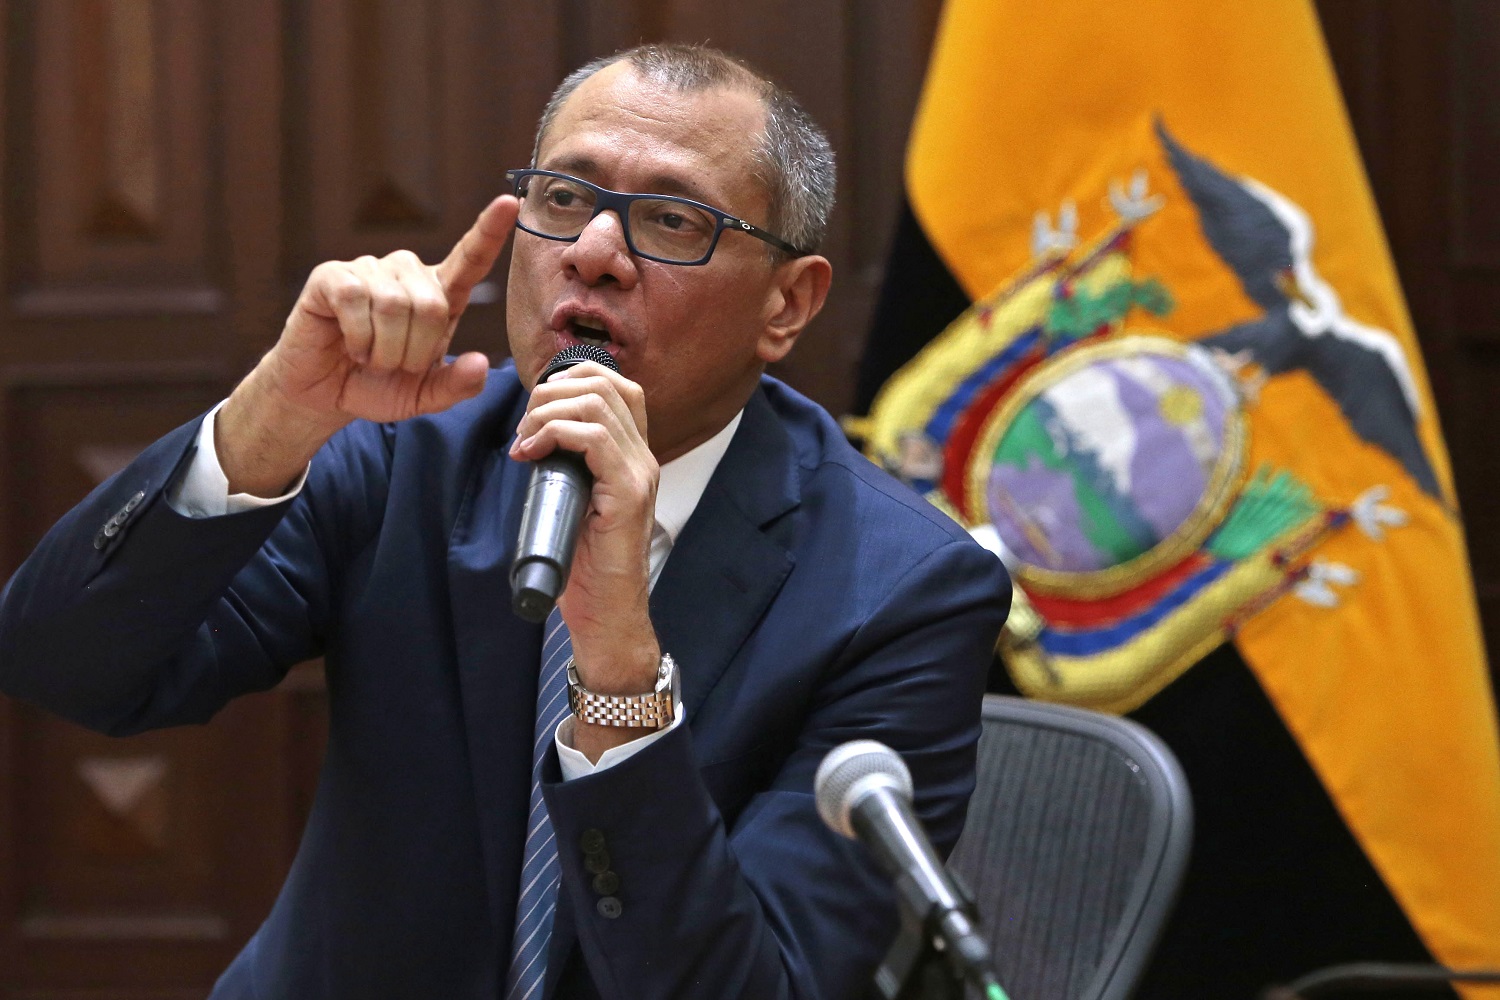 Vicepresidente de Ecuador es llevado a juicio y reafirma su inocencia en una carta a sus hijos